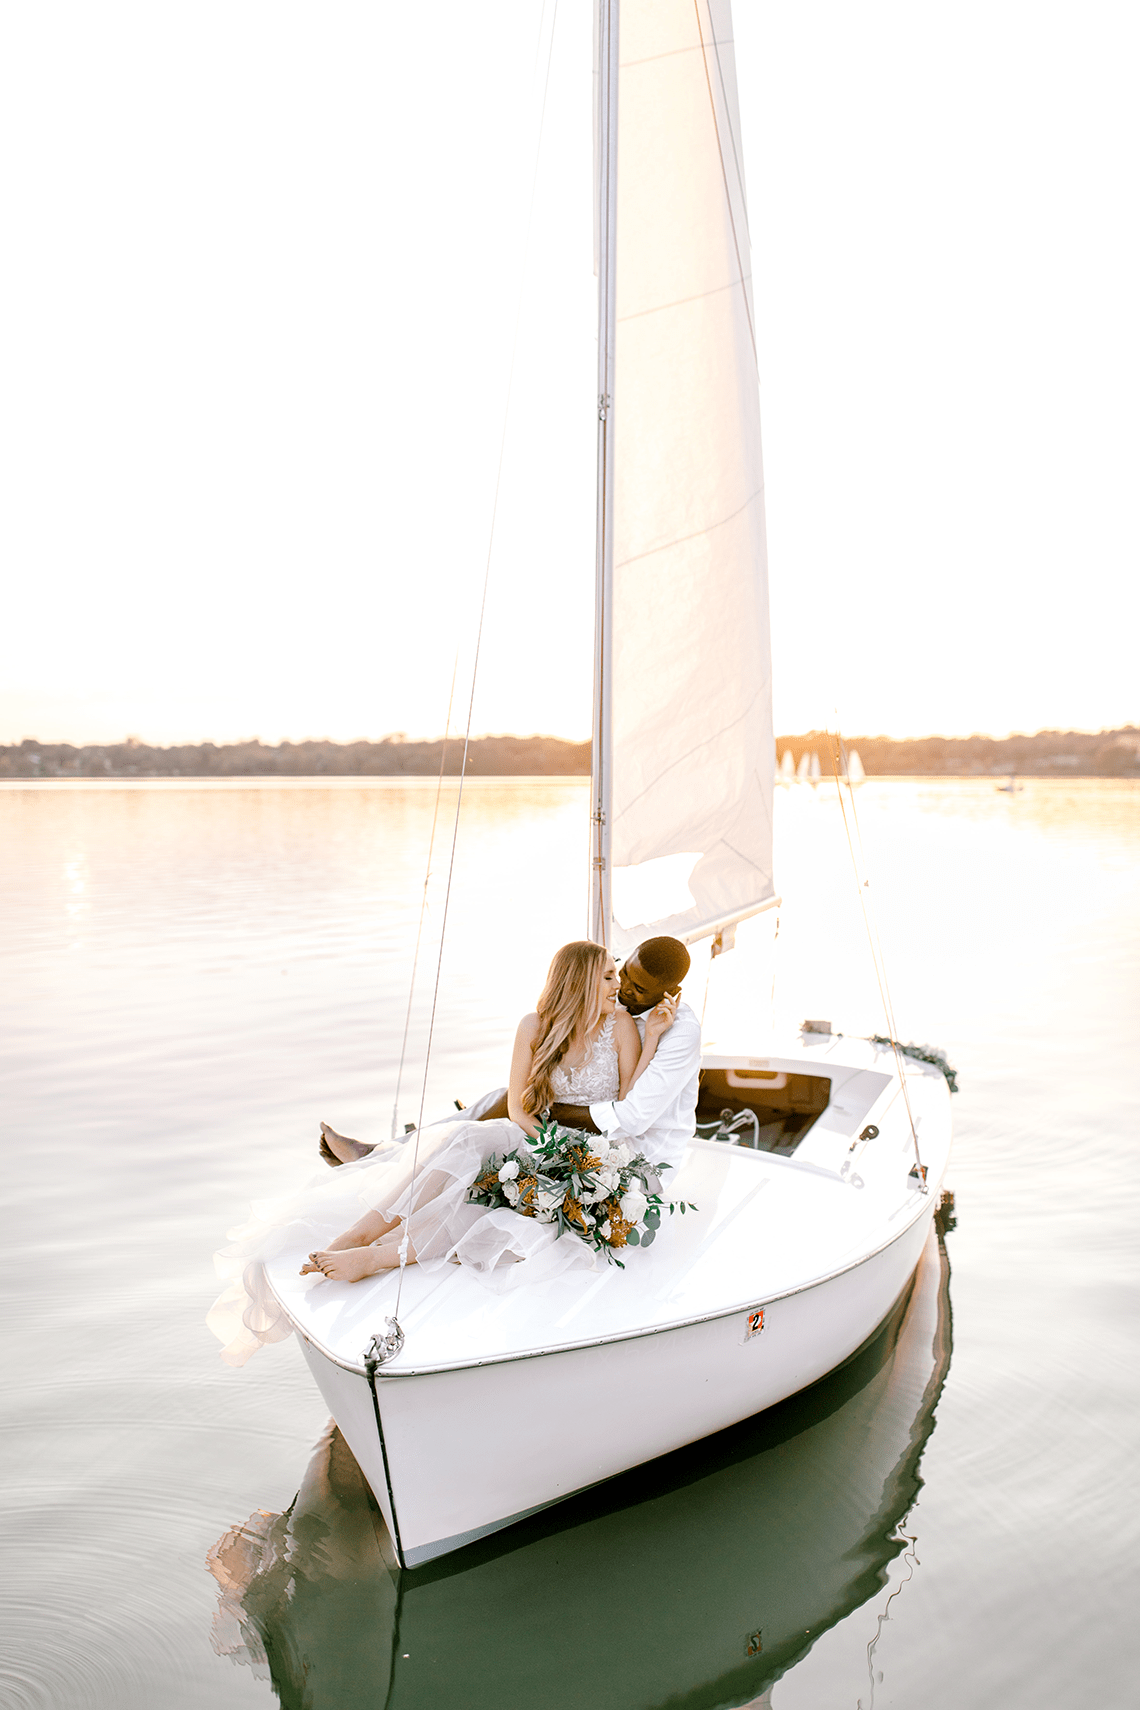 Simple Romantic Sunset Sailboat Elopement Inspiration Lyndi Ruth Photography 18 - Mẹo lập kế hoạch đám cưới cho khi bạn đang ở trong một mối quan hệ xa